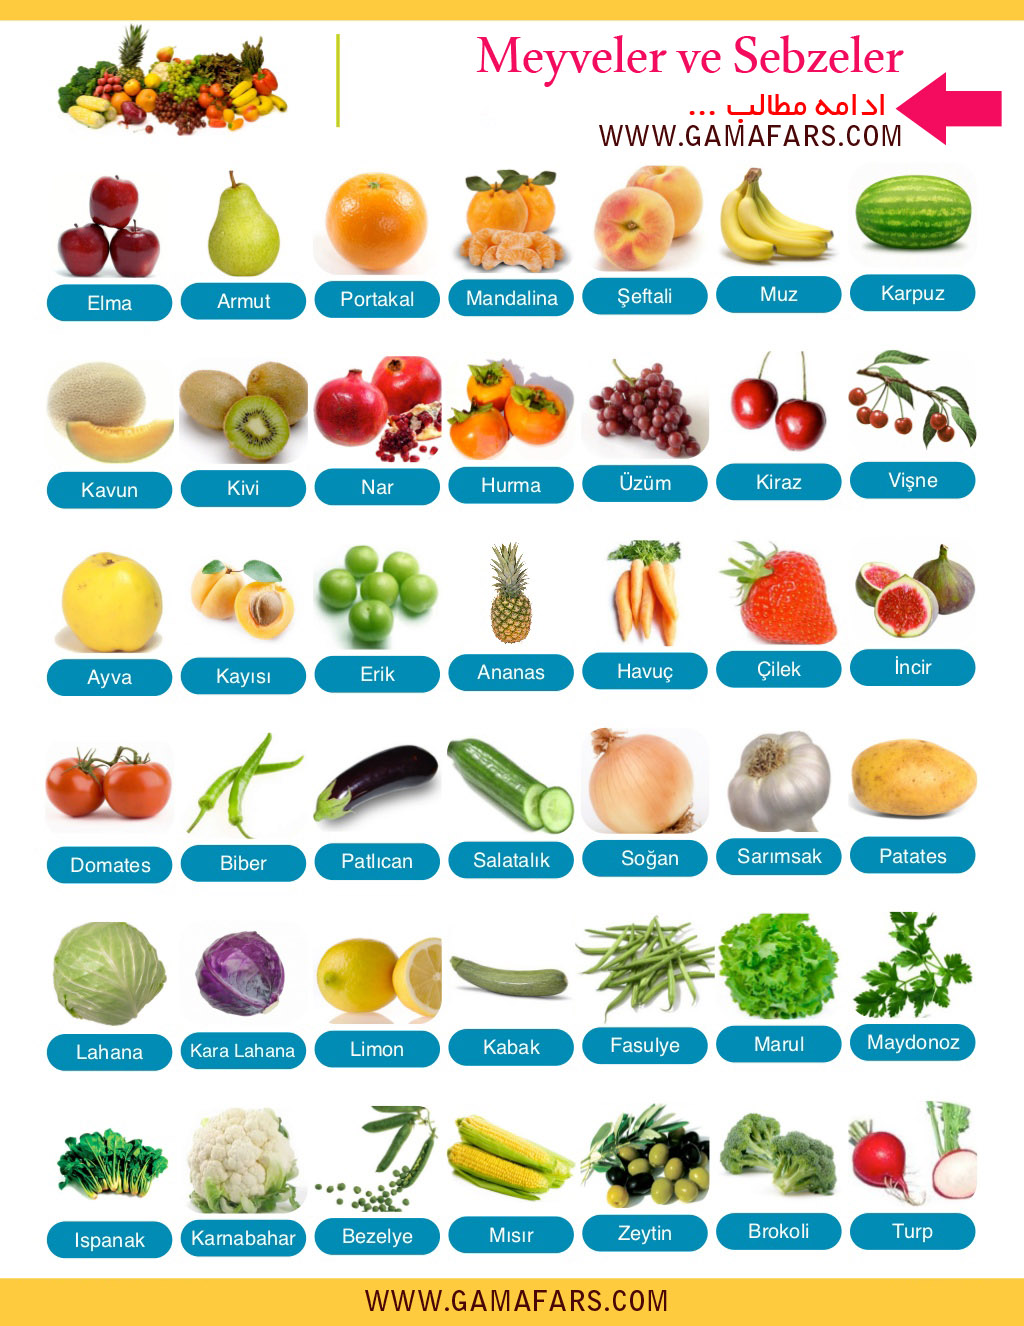 تلفظ کلمه سبزیجات به انگلیسی
